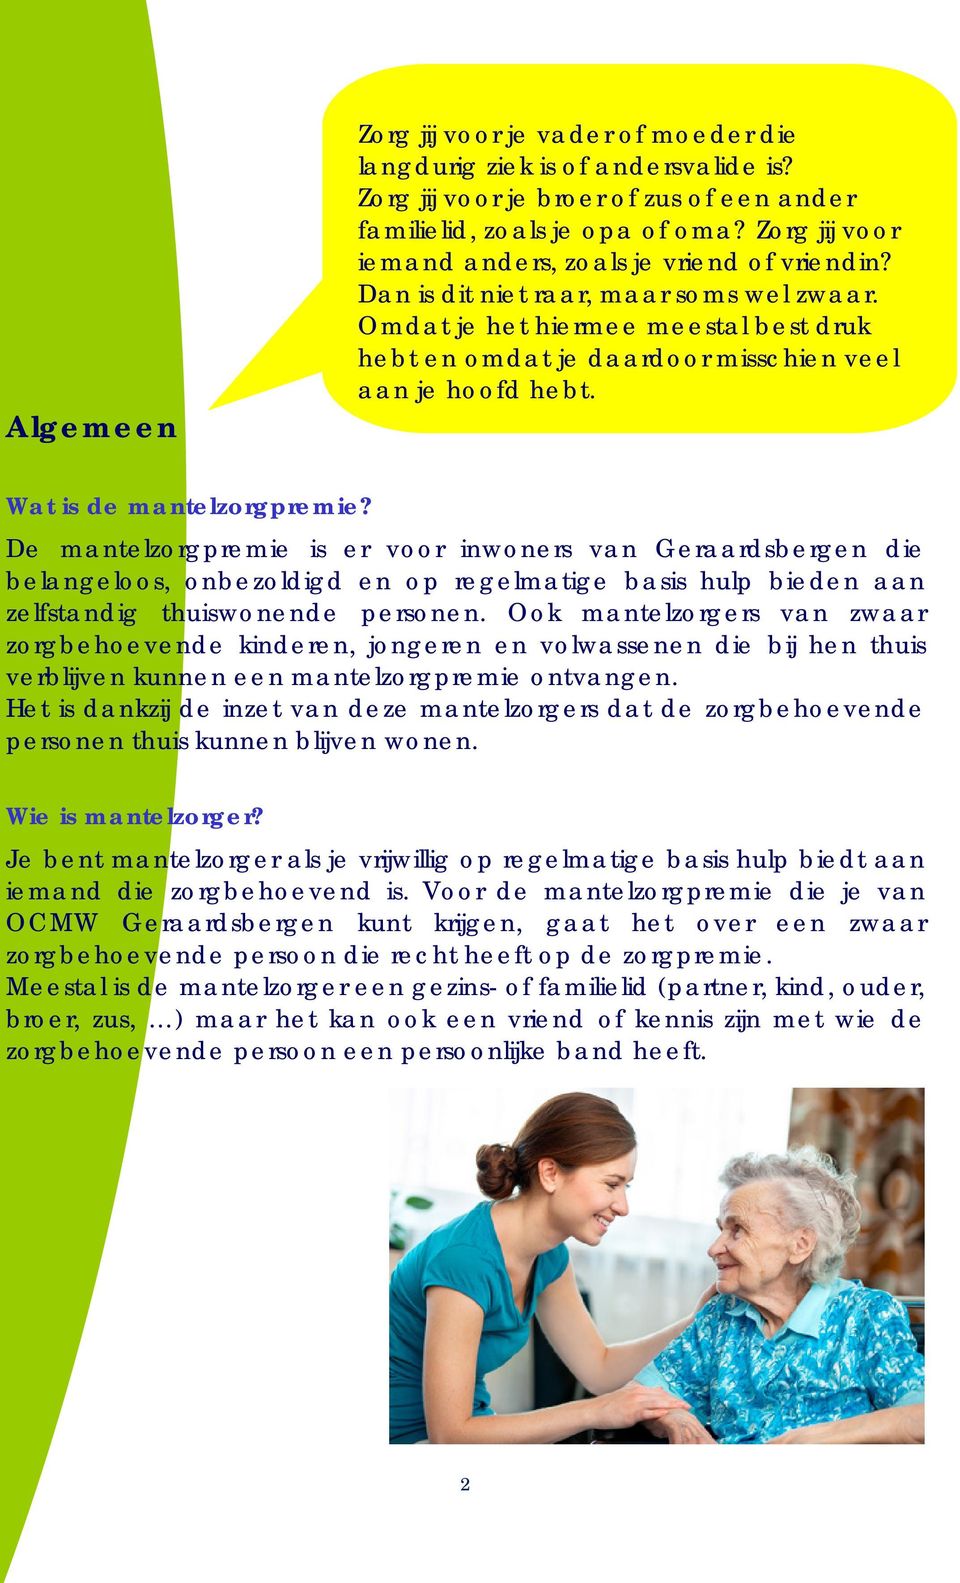 Wat is de mantelzorgpremie? De mantelzorgpremie is er voor inwoners van Geraardsbergen die belangeloos, onbezoldigd en op regelmatige basis hulp bieden aan zelfstandig thuiswonende personen.